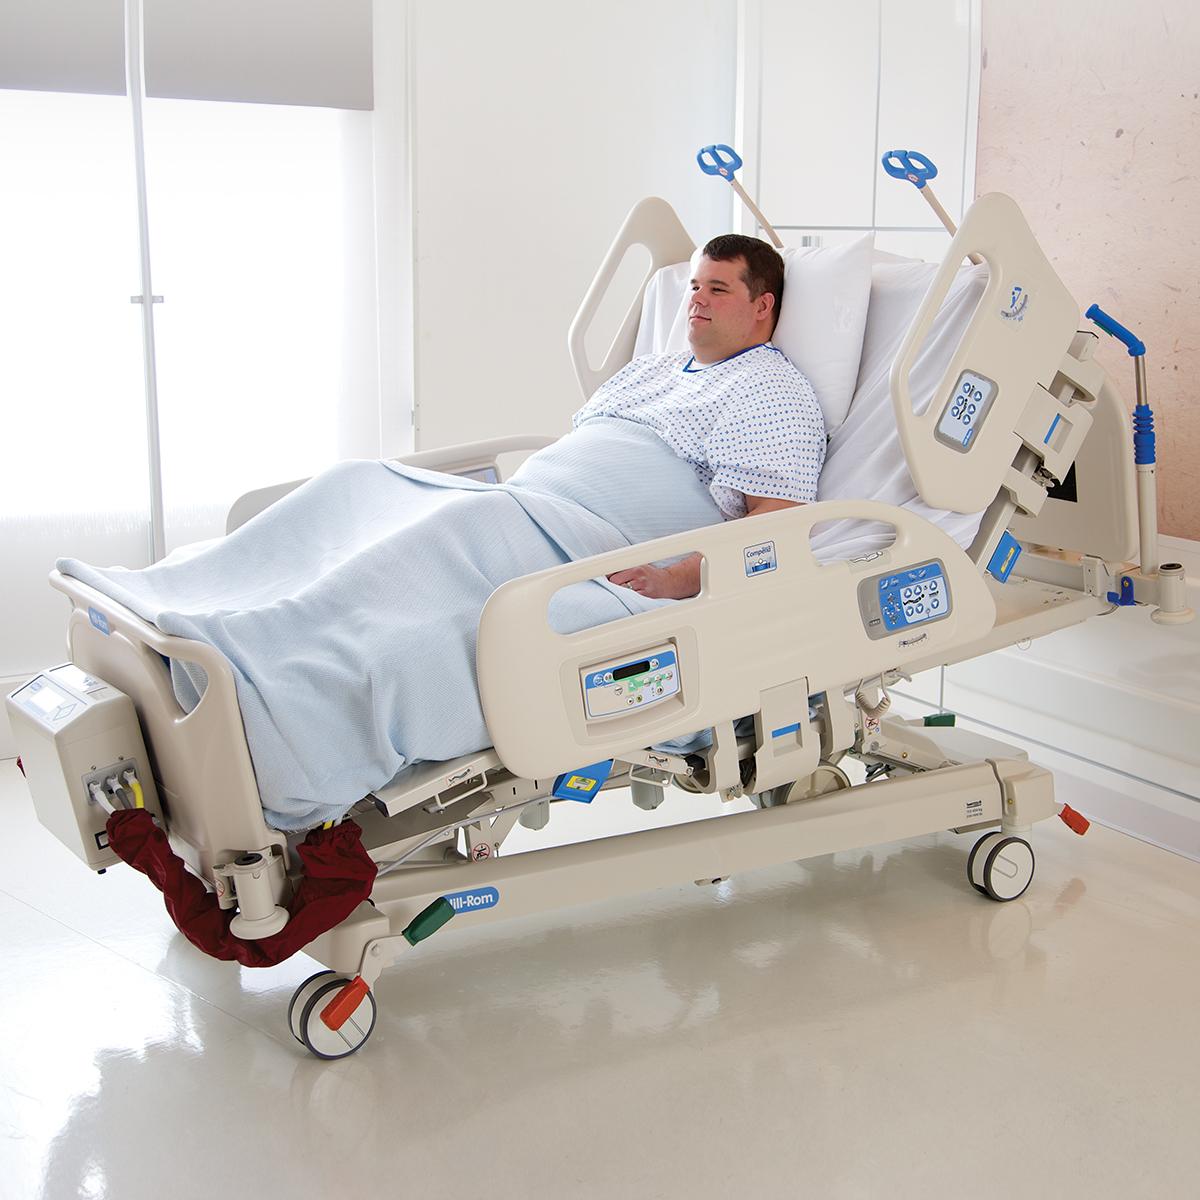 คุณลักษณะ FlexAfoot สามารถปรับขยายความยาวของเตียงผู้ป่วยภาวะโรคอ้วน Compella เพื่อรองรับผู้ป่วยตัวสูงได้อย่างรวดเร็ว